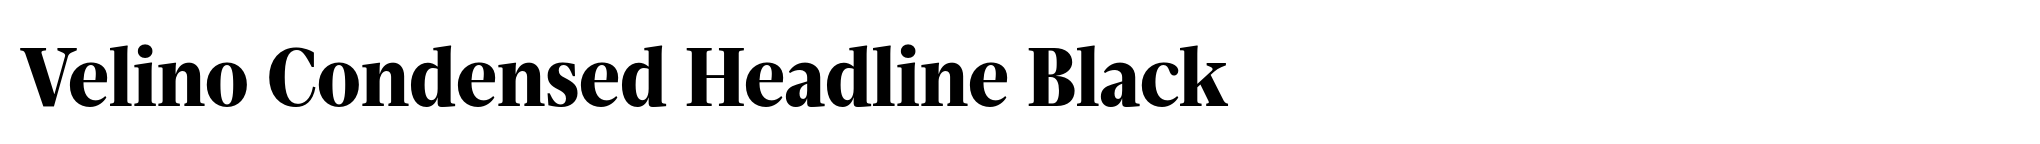 Velino Condensed Headline Black image